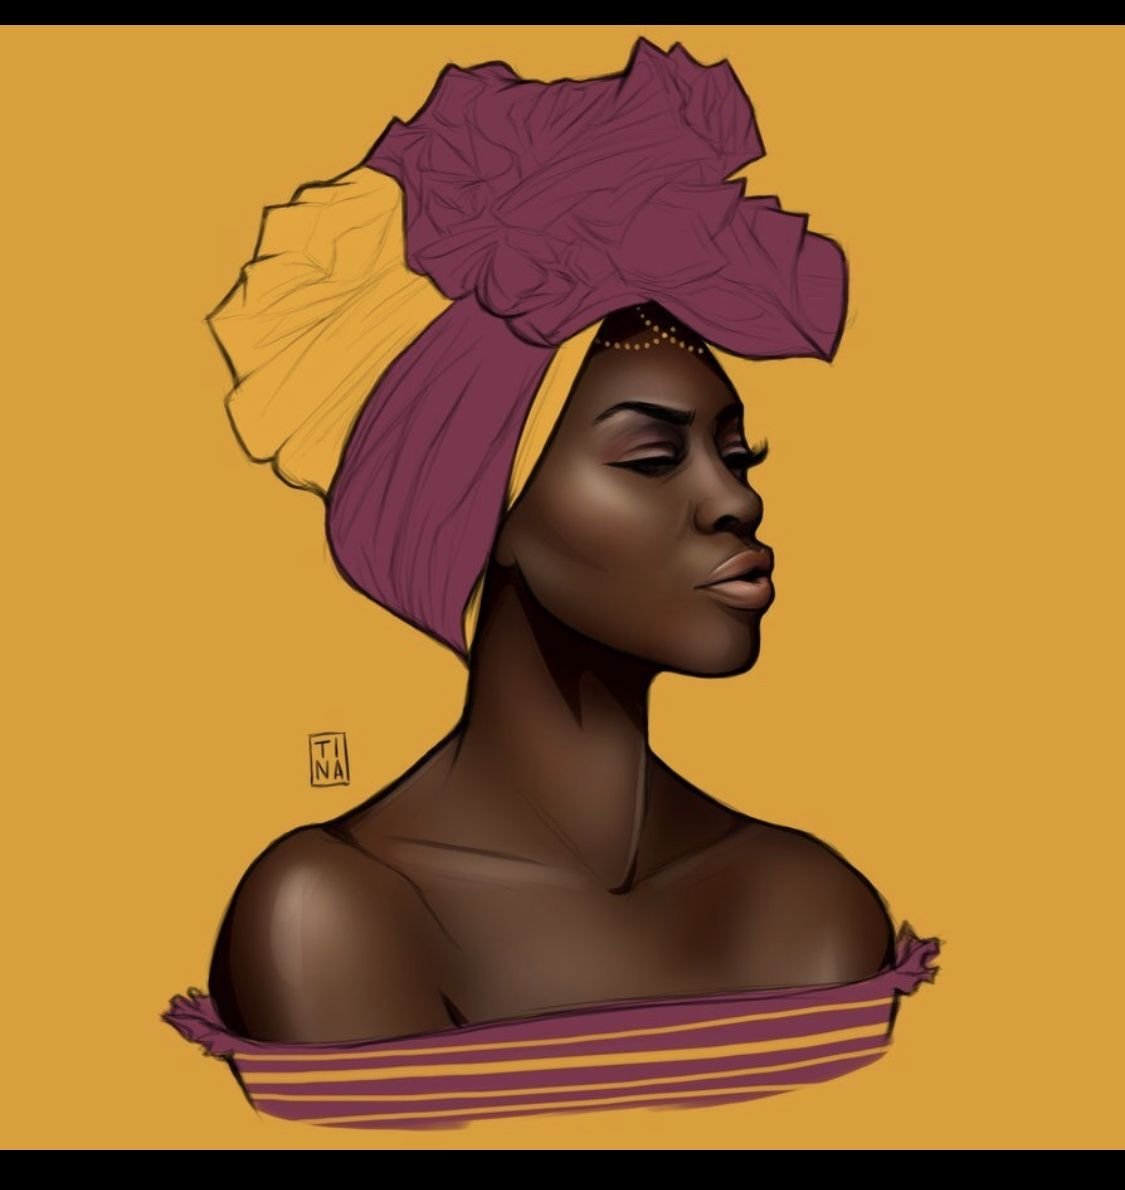 Негритянка плачет. Портрет негритянки. Темнокожая женщина арт. Афроамериканки арт. Портрет афроамериканки.